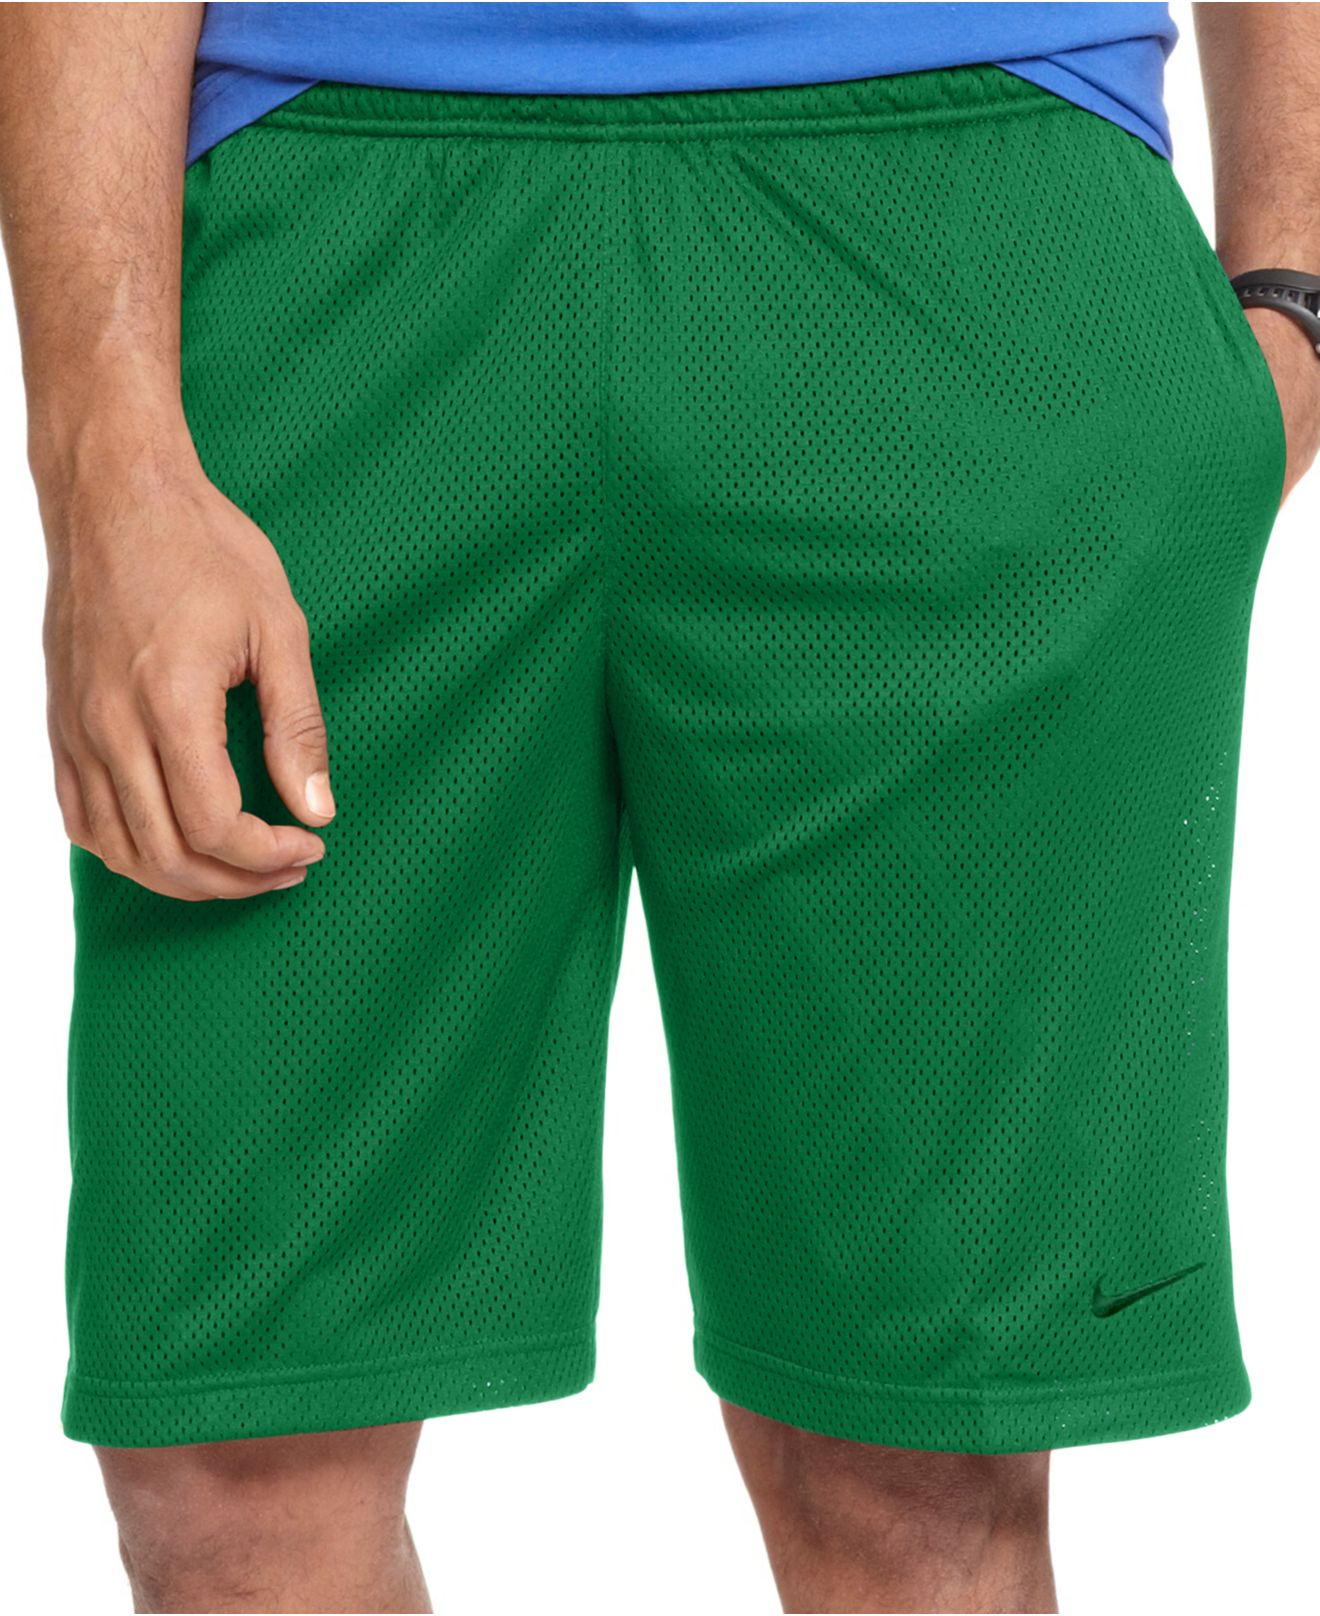 green nike dri fit shorts